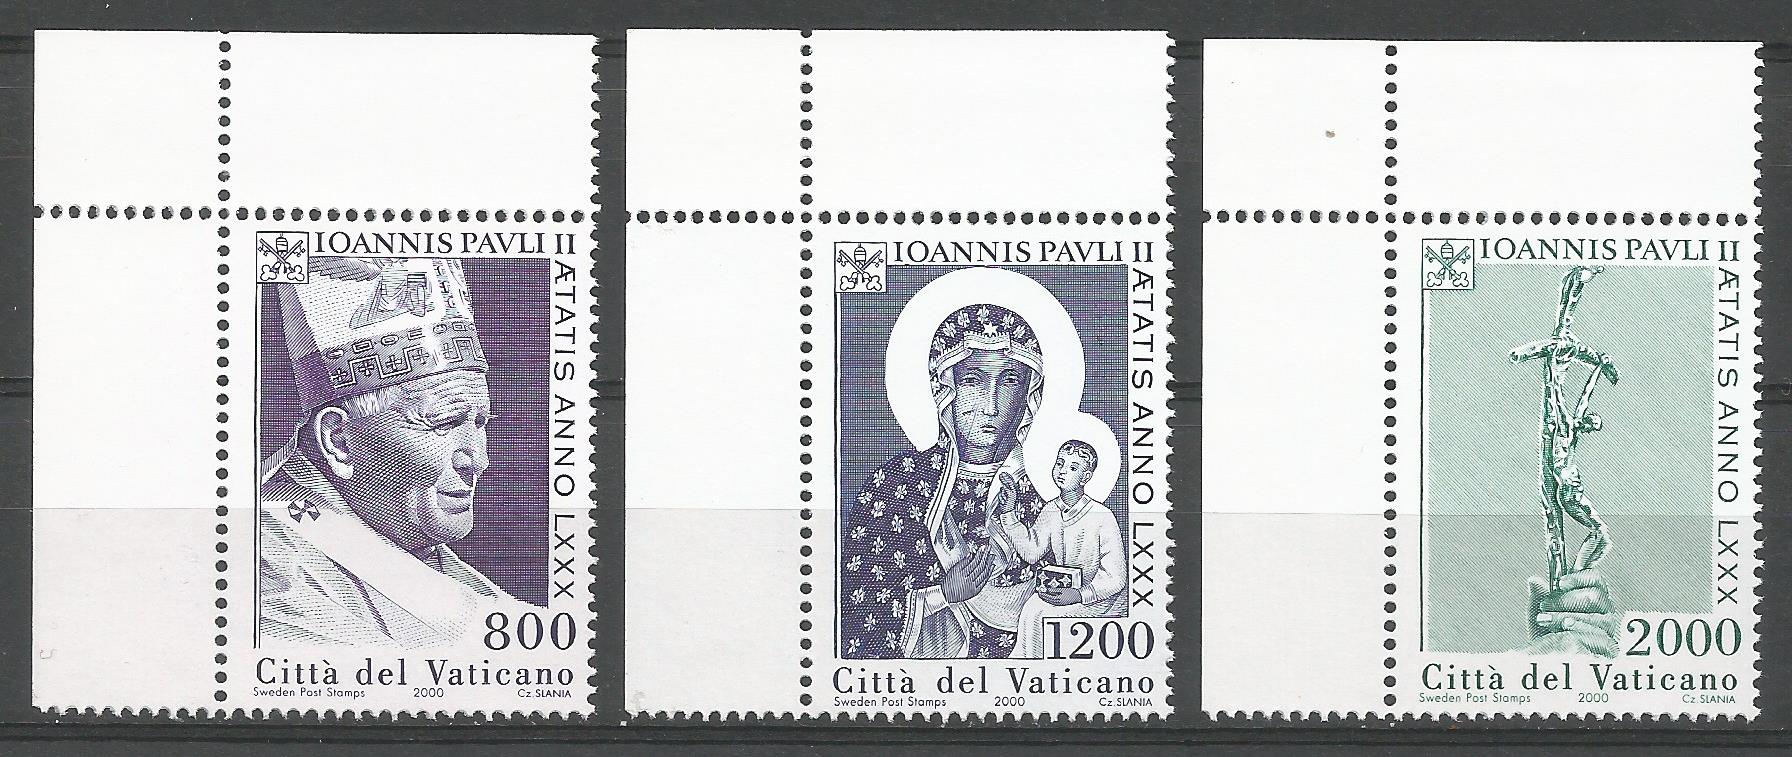 51721 - VATICANO - 2000 - 80 genetliaco di Papa Giovanni Paolo II - Serie completa 3 valori nuovi - Unificato : 1208/1210 - VTC143